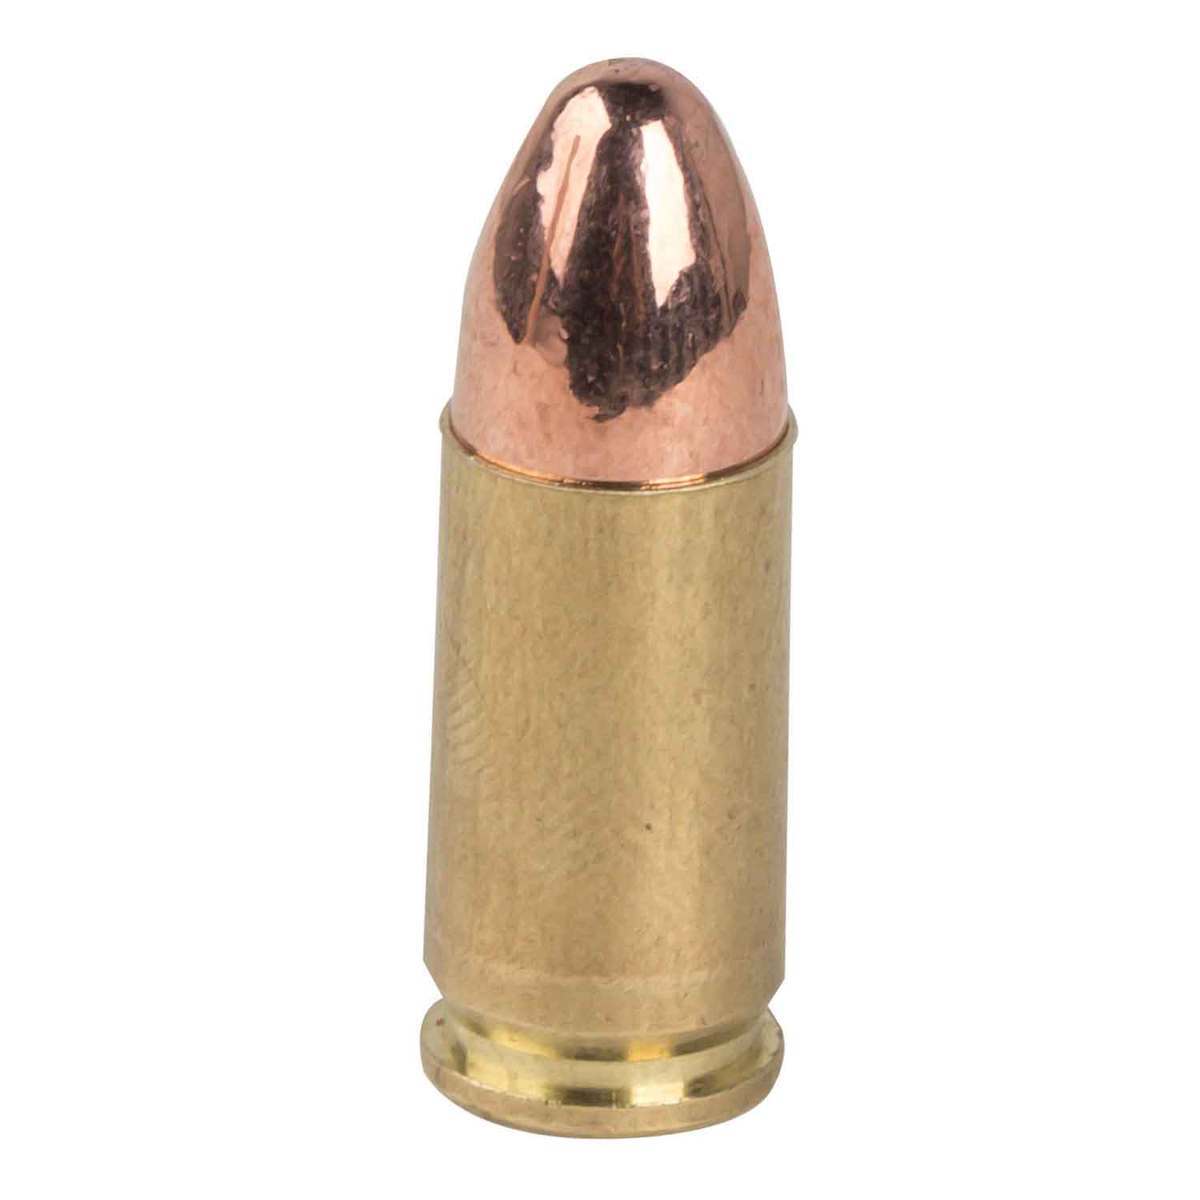 cci-blazer-brass-9mm-luger-115gr-fmj-handgun-ammo-250-rounds